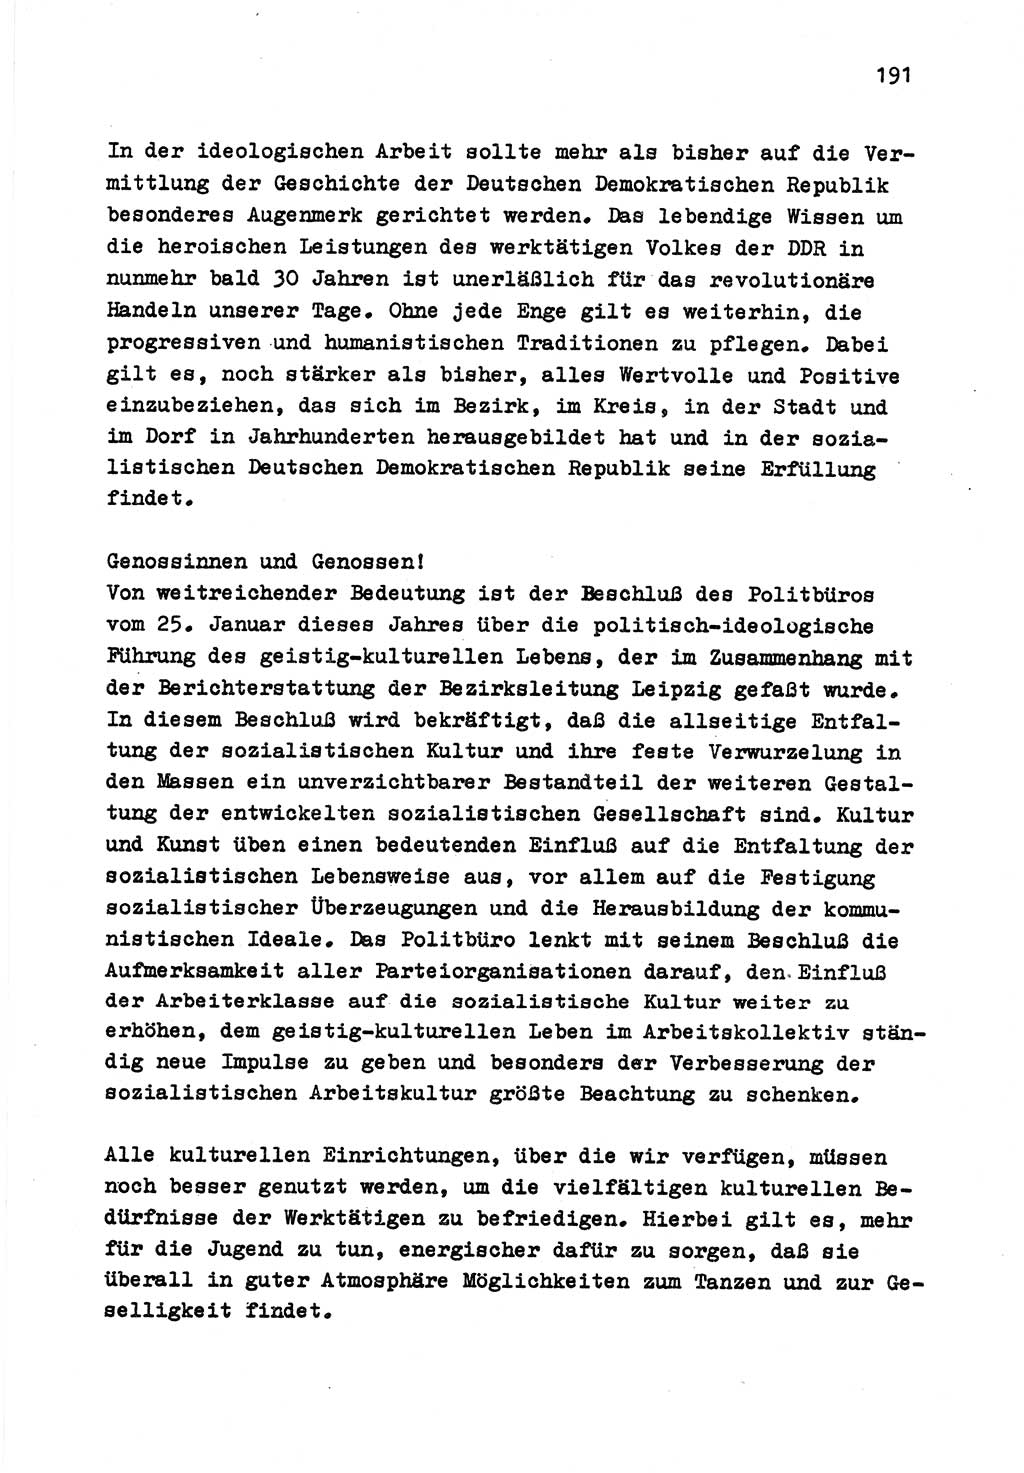 Zu Fragen der Parteiarbeit [Sozialistische Einheitspartei Deutschlands (SED) Deutsche Demokratische Republik (DDR)] 1979, Seite 191 (Fr. PA SED DDR 1979, S. 191)